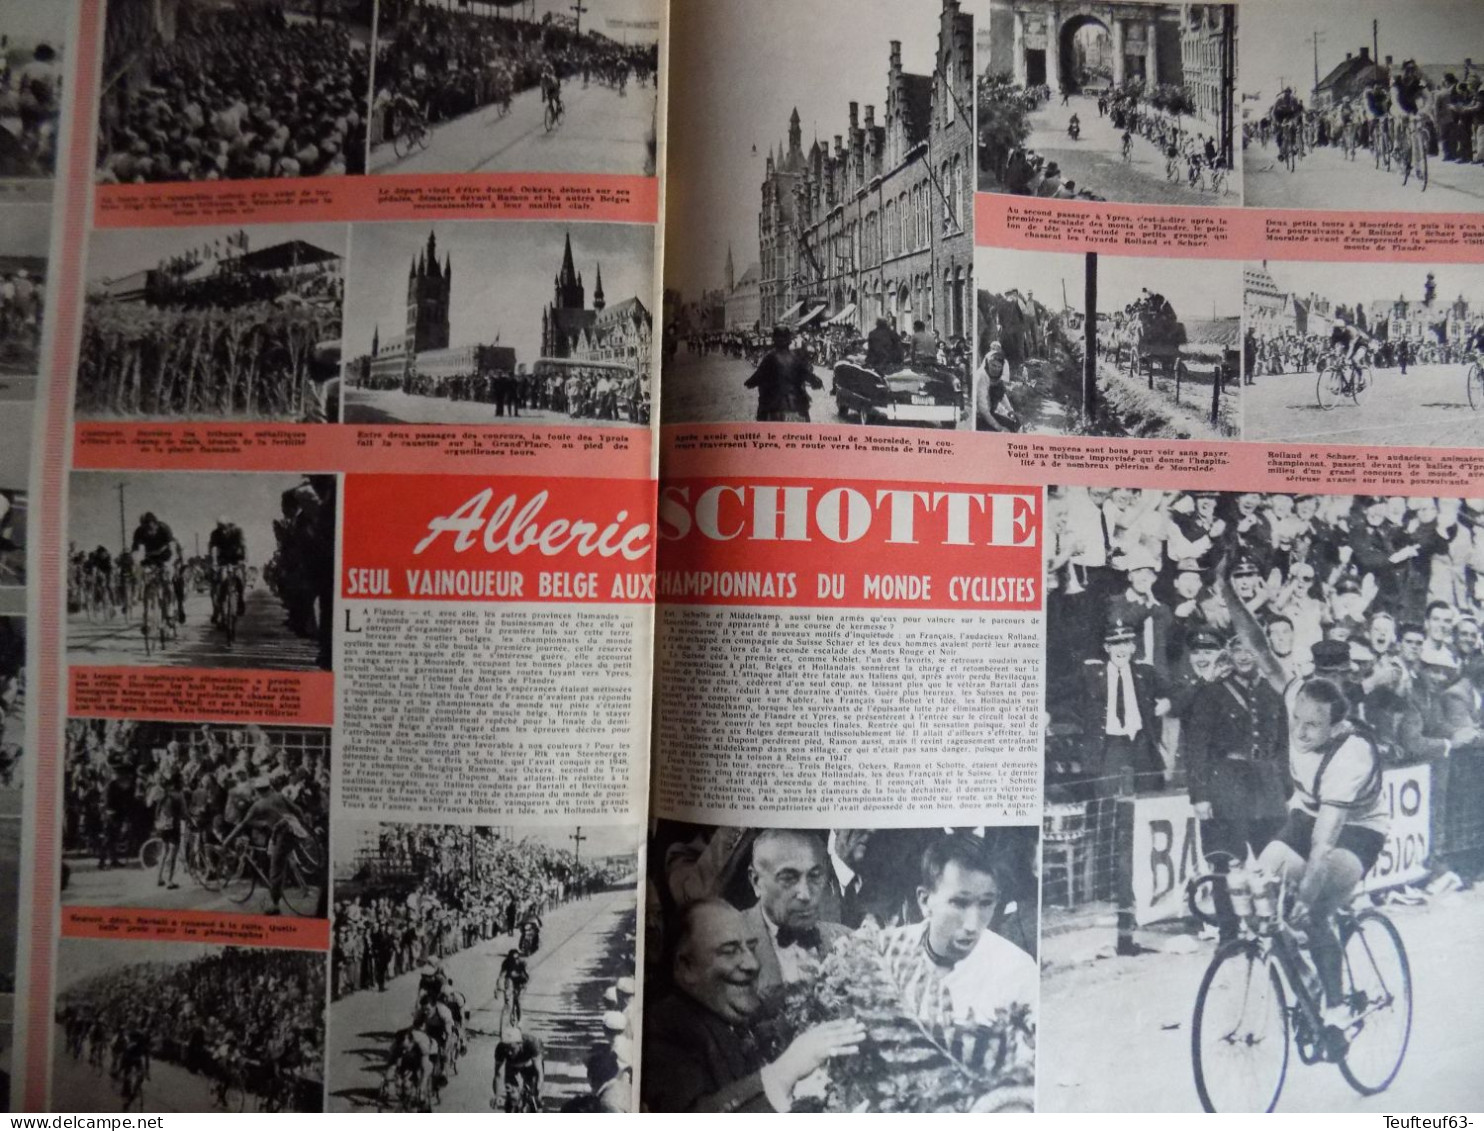 Le Soir Illustré N° 948 Mariage Au Luxembourg - Richard Todd - Cyclisme Alberic Schotte - Docteur Chenevée Homme-triton - Allgemeine Literatur